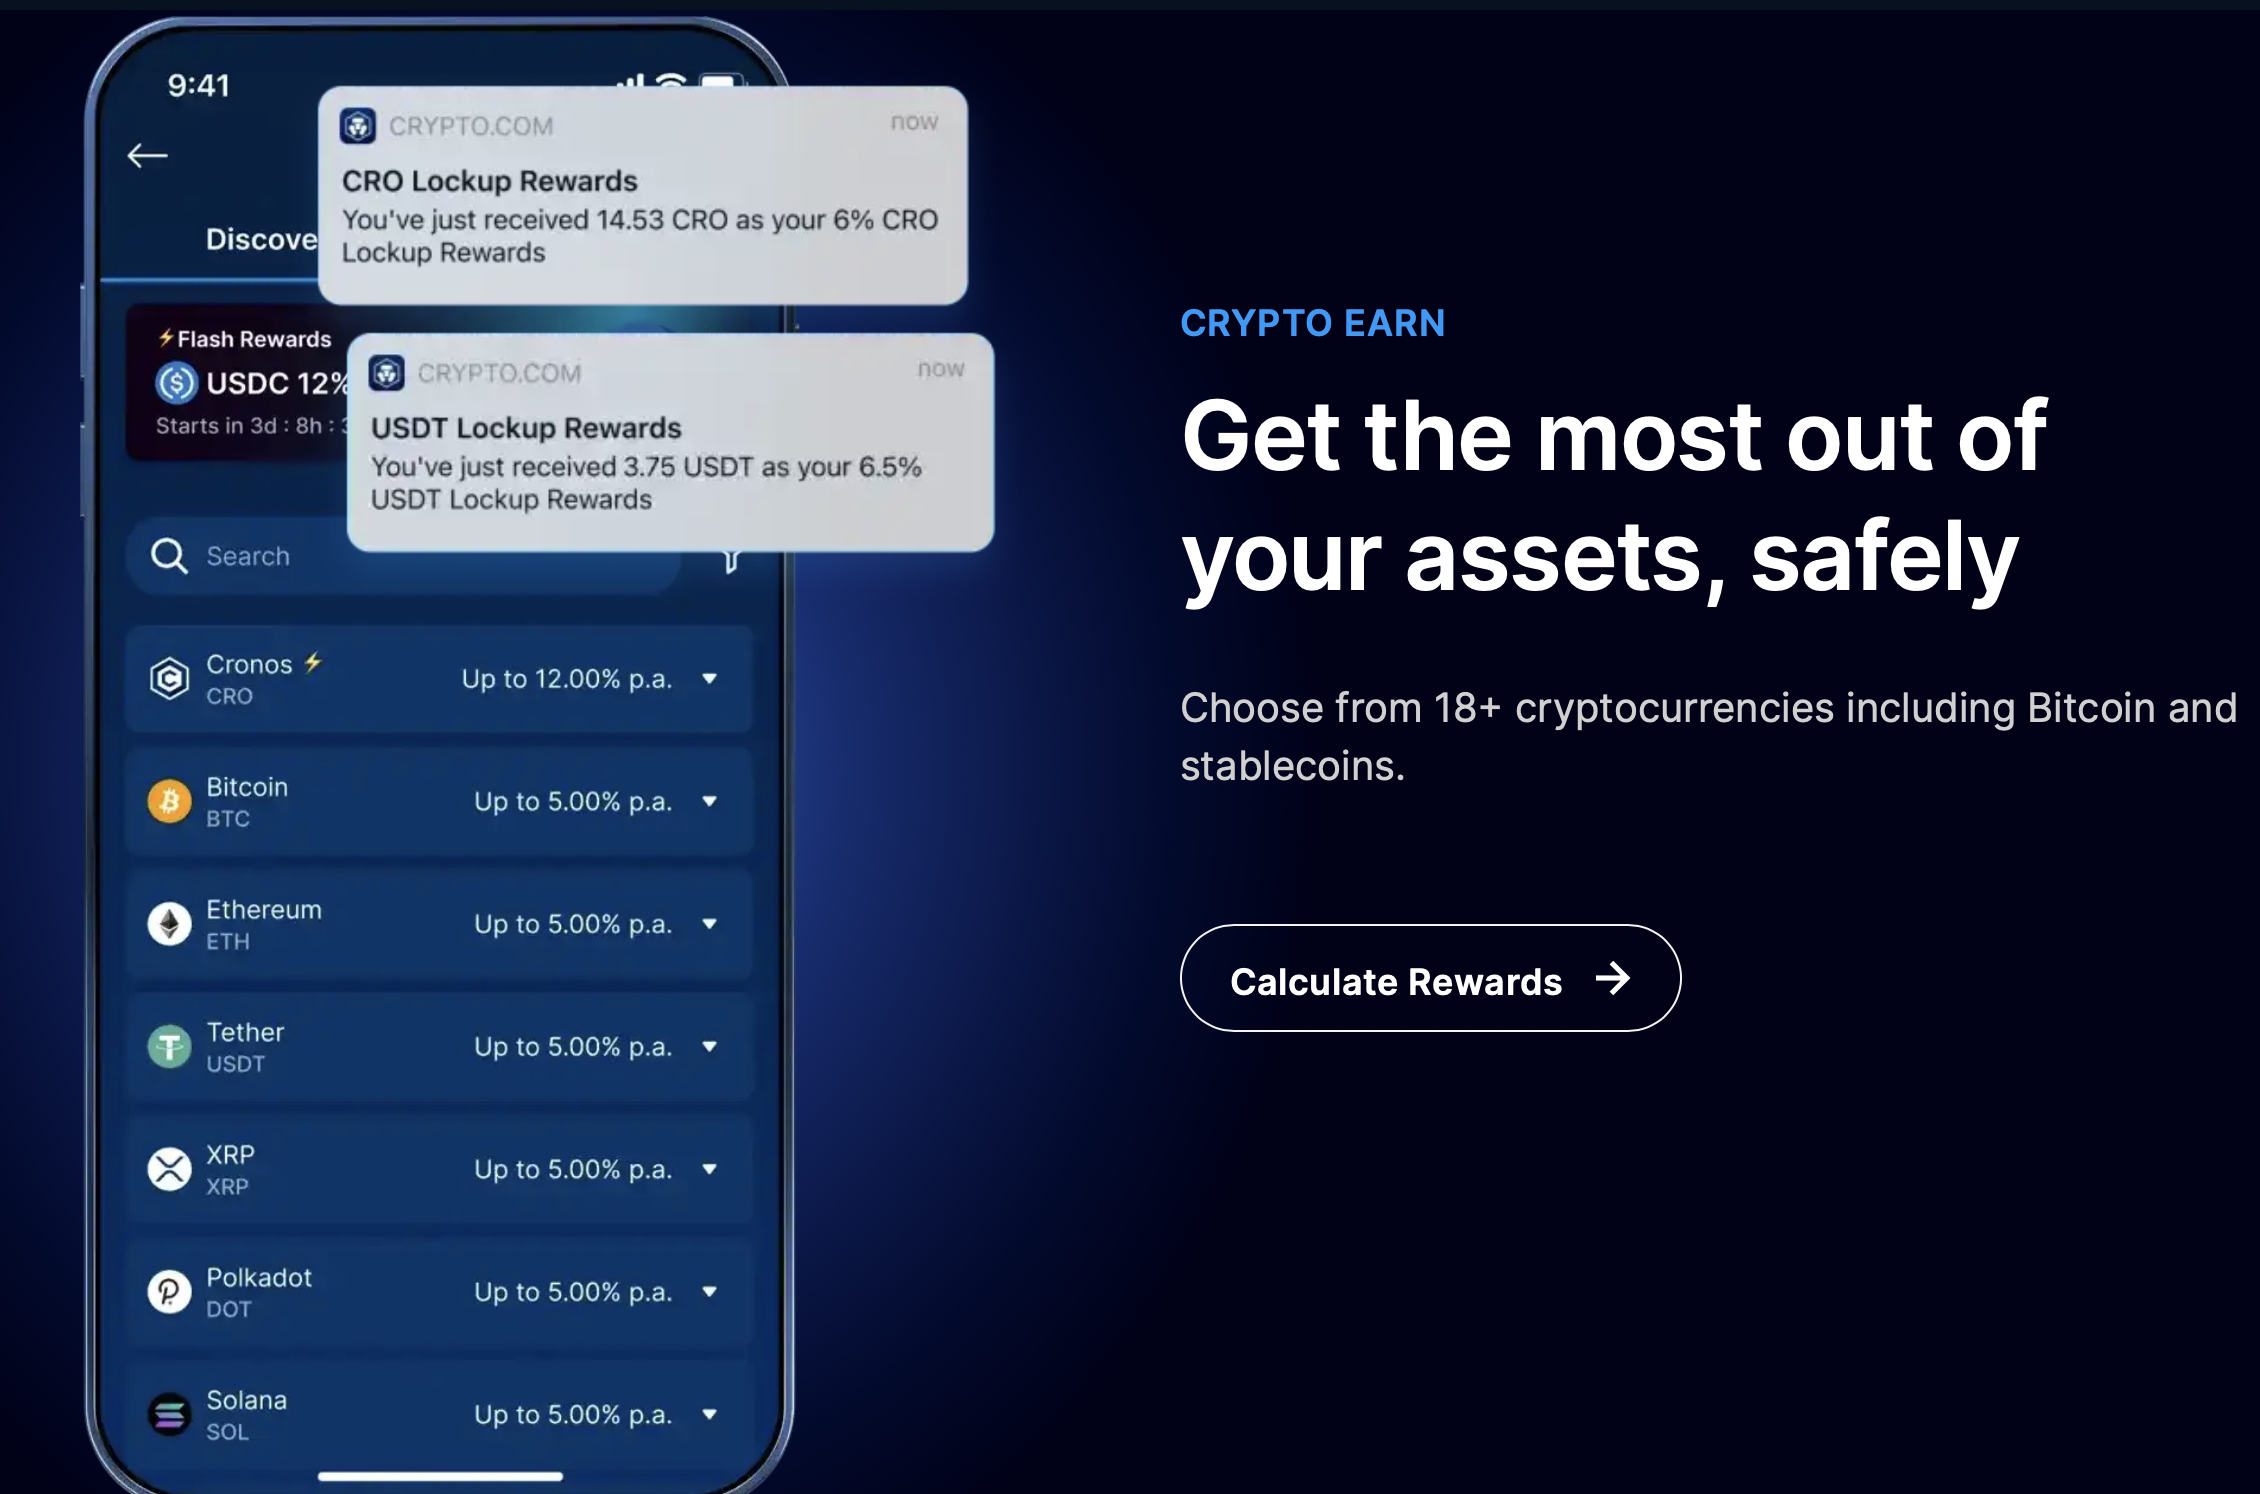 Crypto.com 2